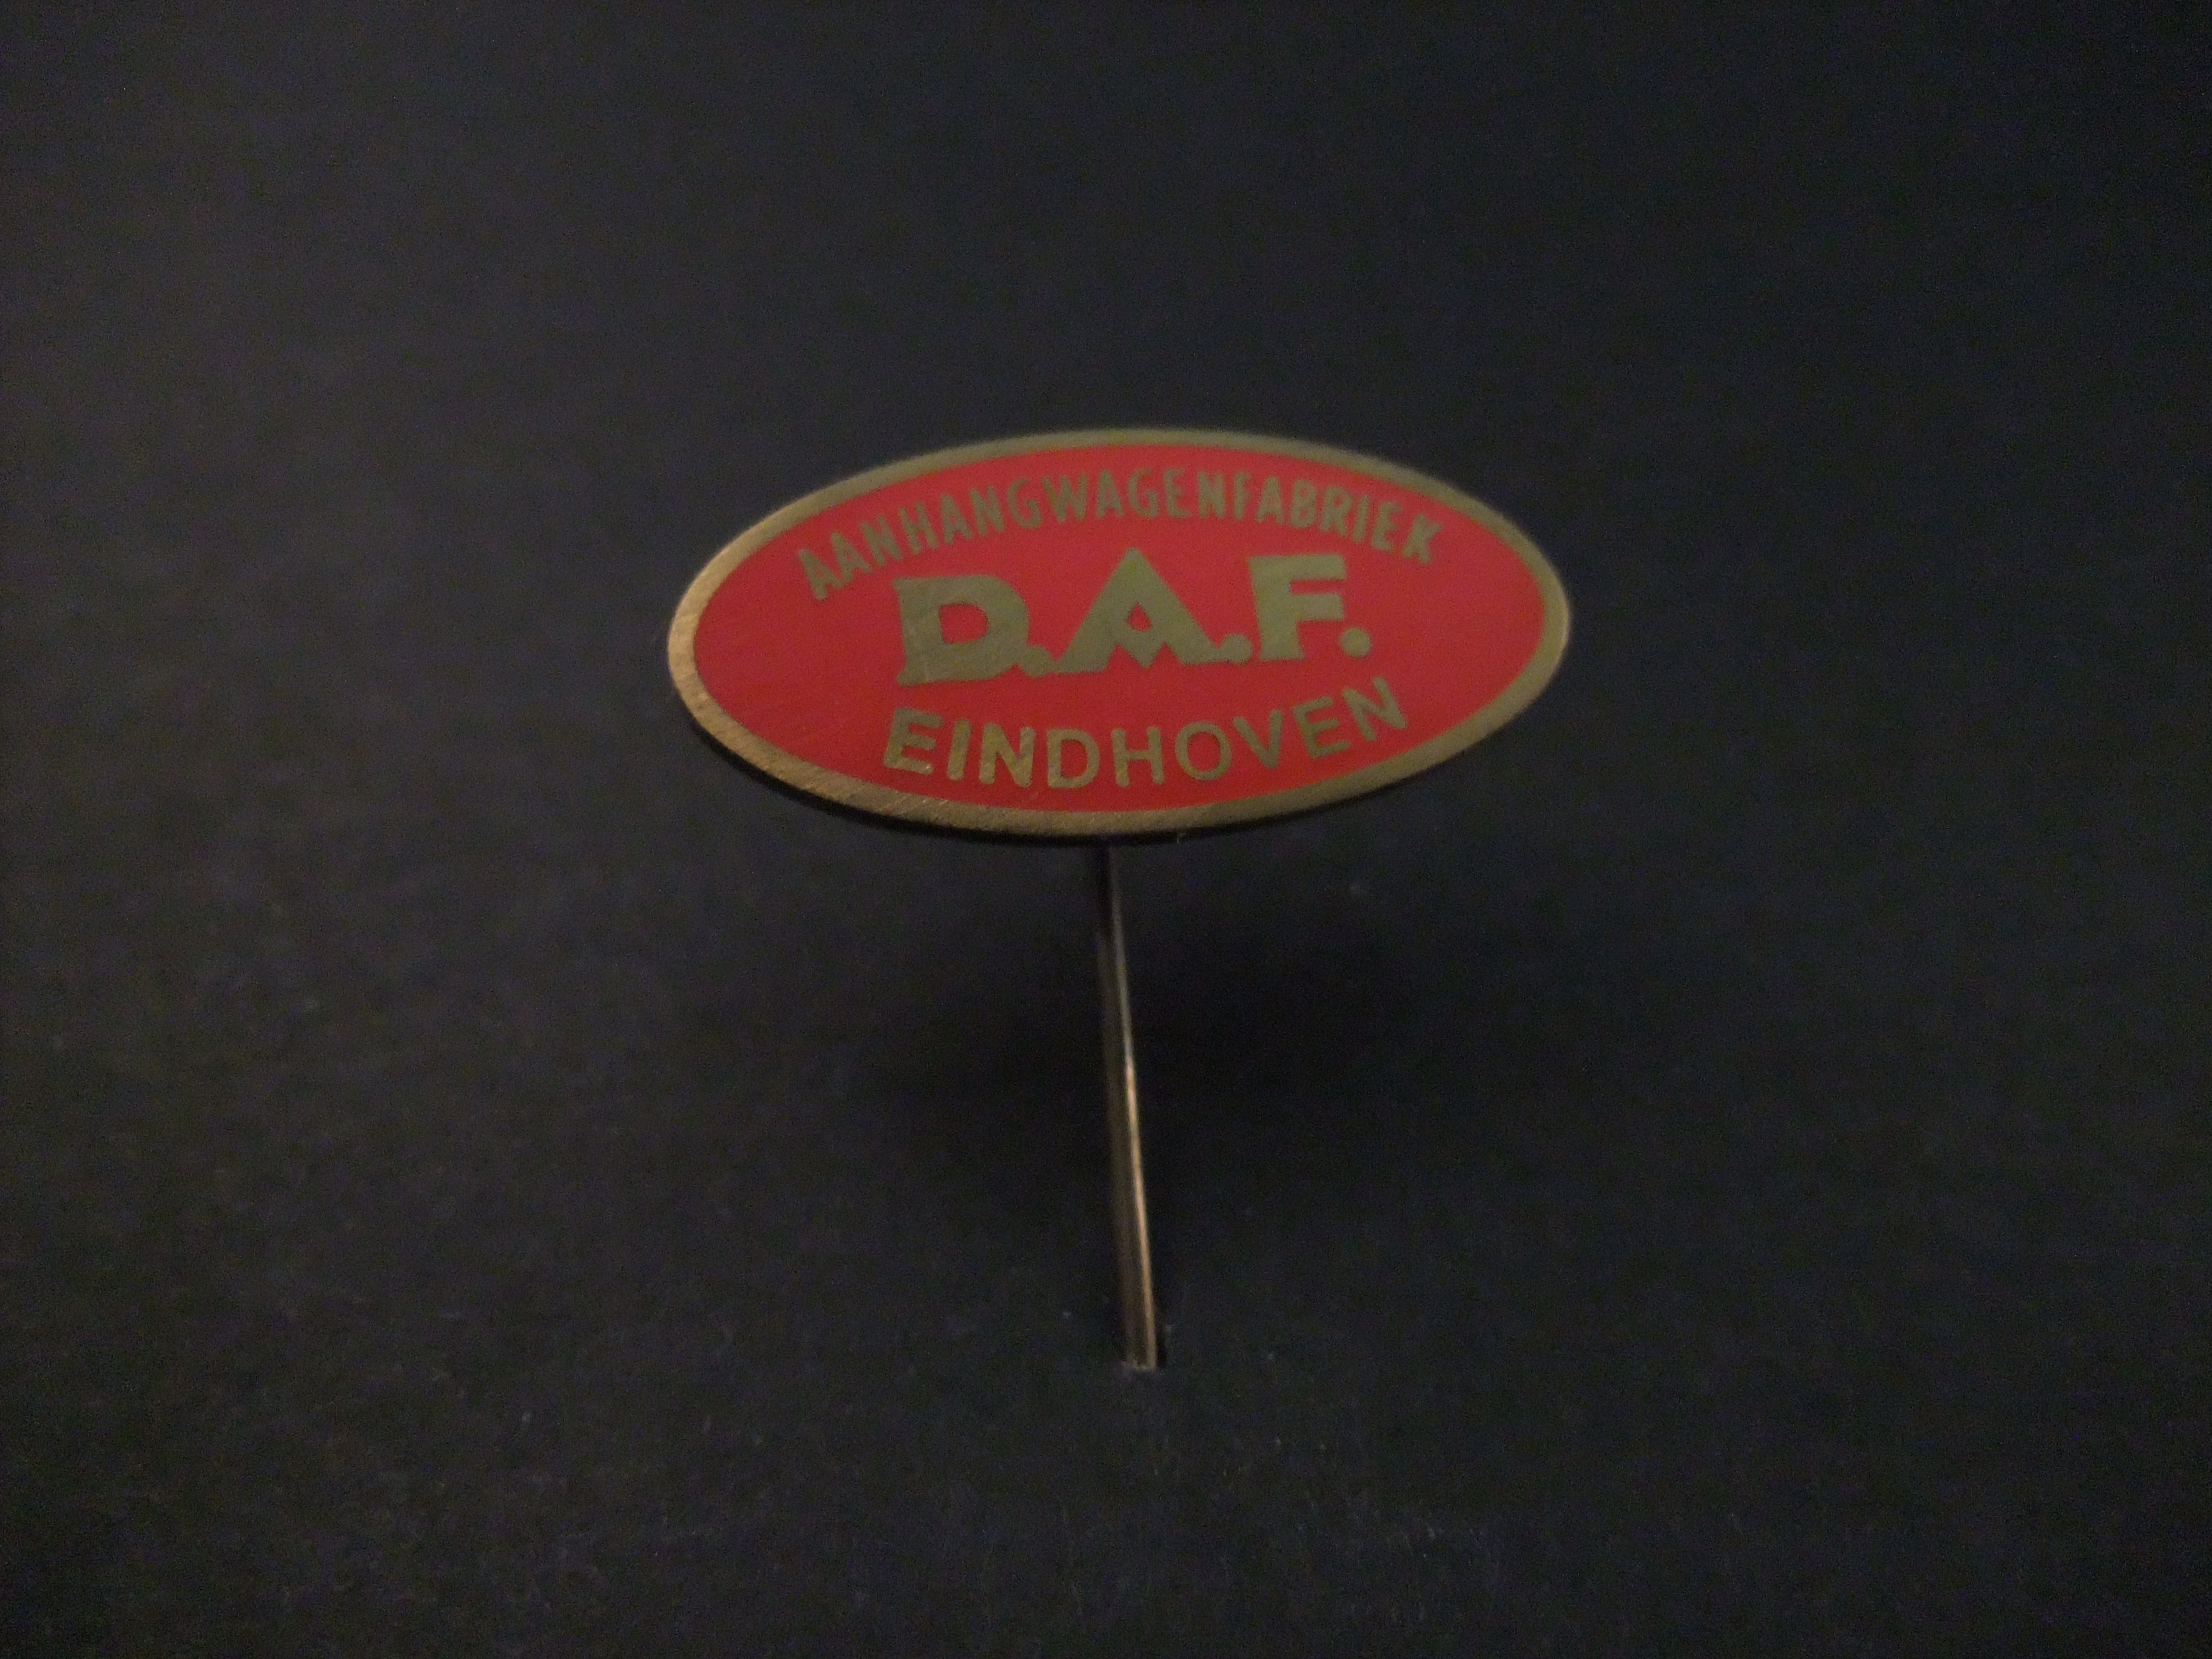 DAF ( Van Doorne Aanhangwagen Fabriek) ,Eindhoven rood-goudkleurig emaille uitvoering